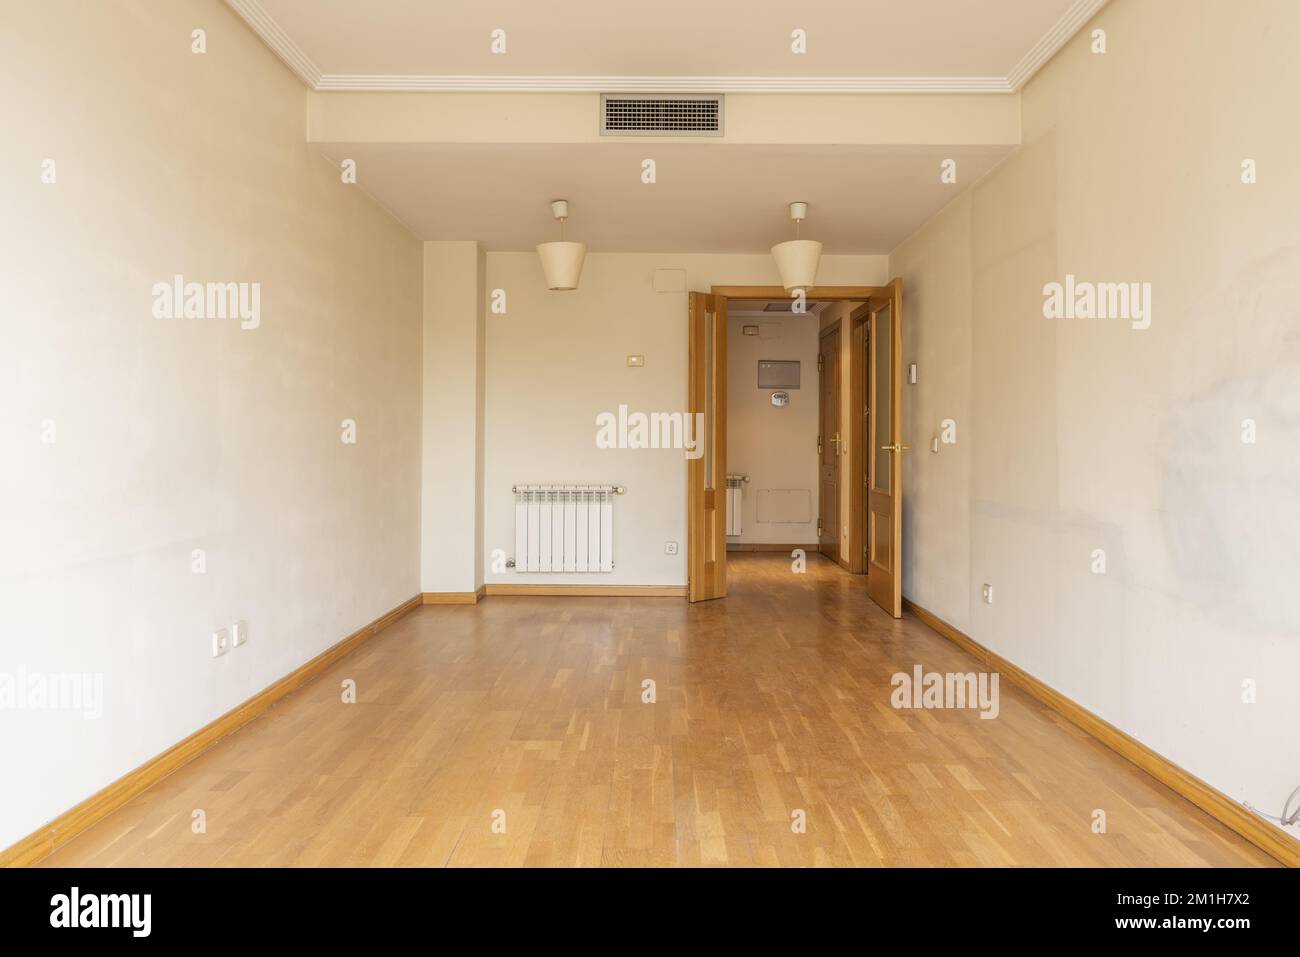 Ein leerer Raum mit Doppelholztüren, einem Aluminiumheizkörper, Klimaanlage durch versteckte Kanäle in der Zwischendecke und Eichenparkettboden. Stockfoto